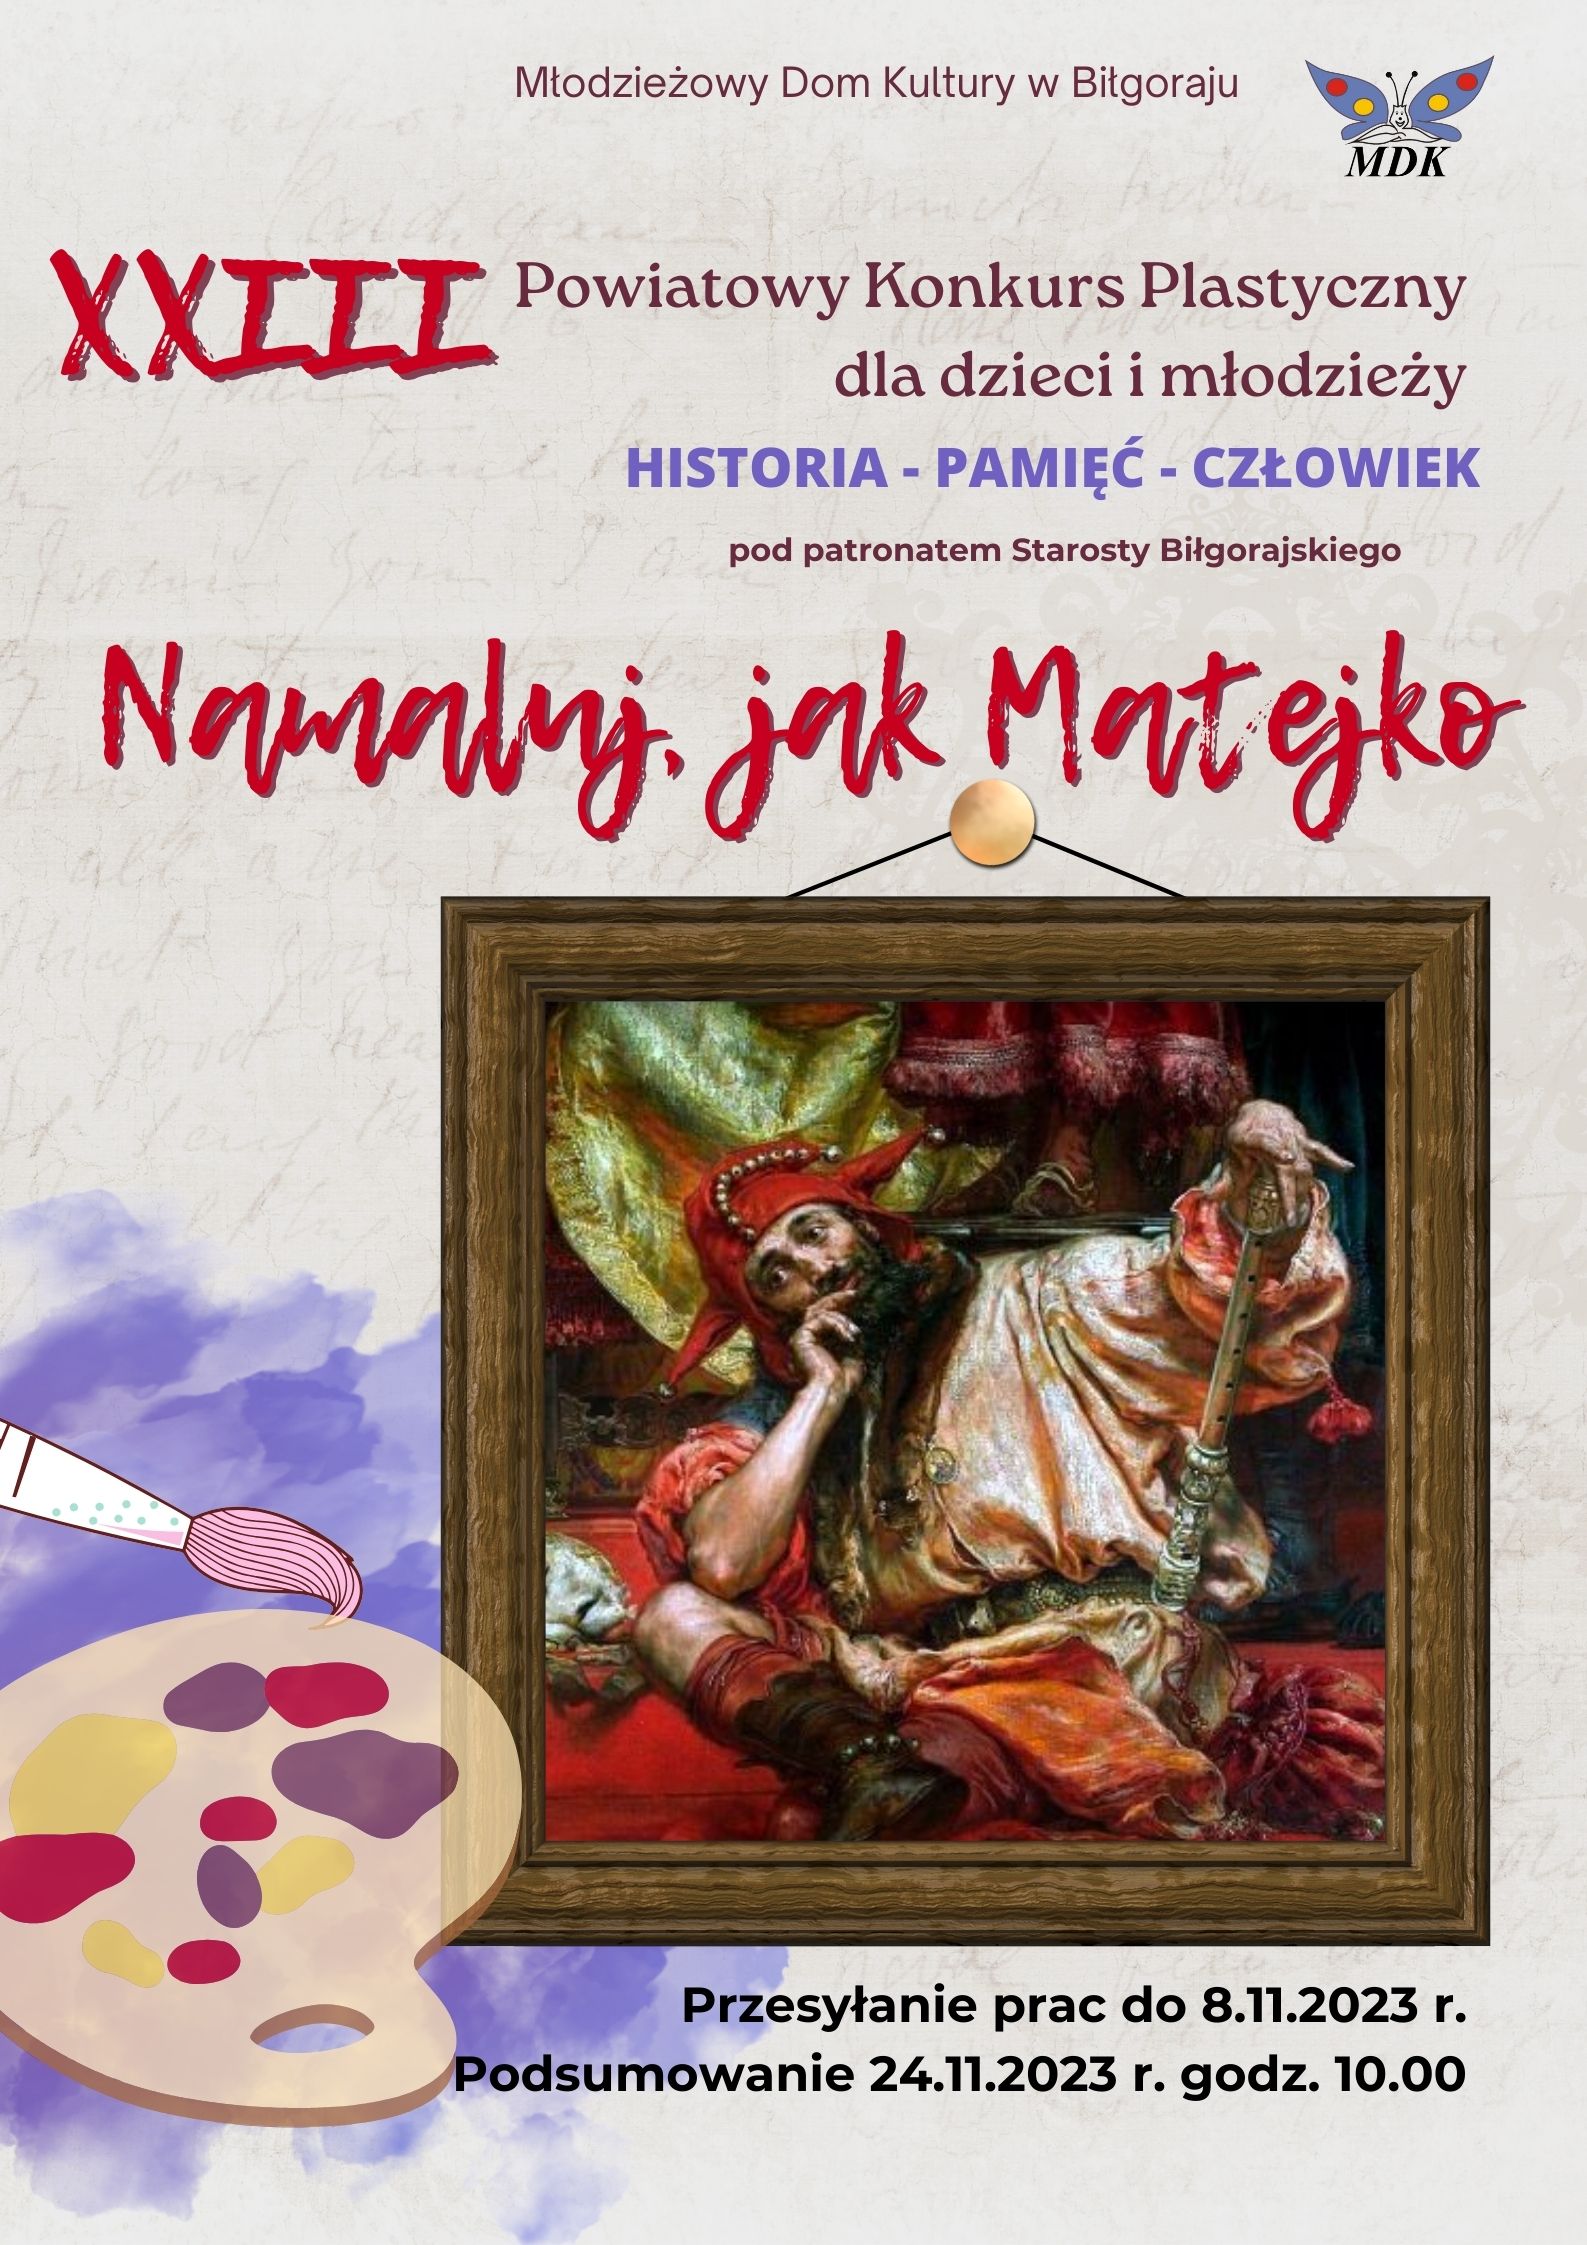 Plakat - XXIII POWIATOWY KONKURS PLASTYCZNY DLA DZIECI I MŁODZIEŻY pod patronatem Starosty Biłgorajskiego